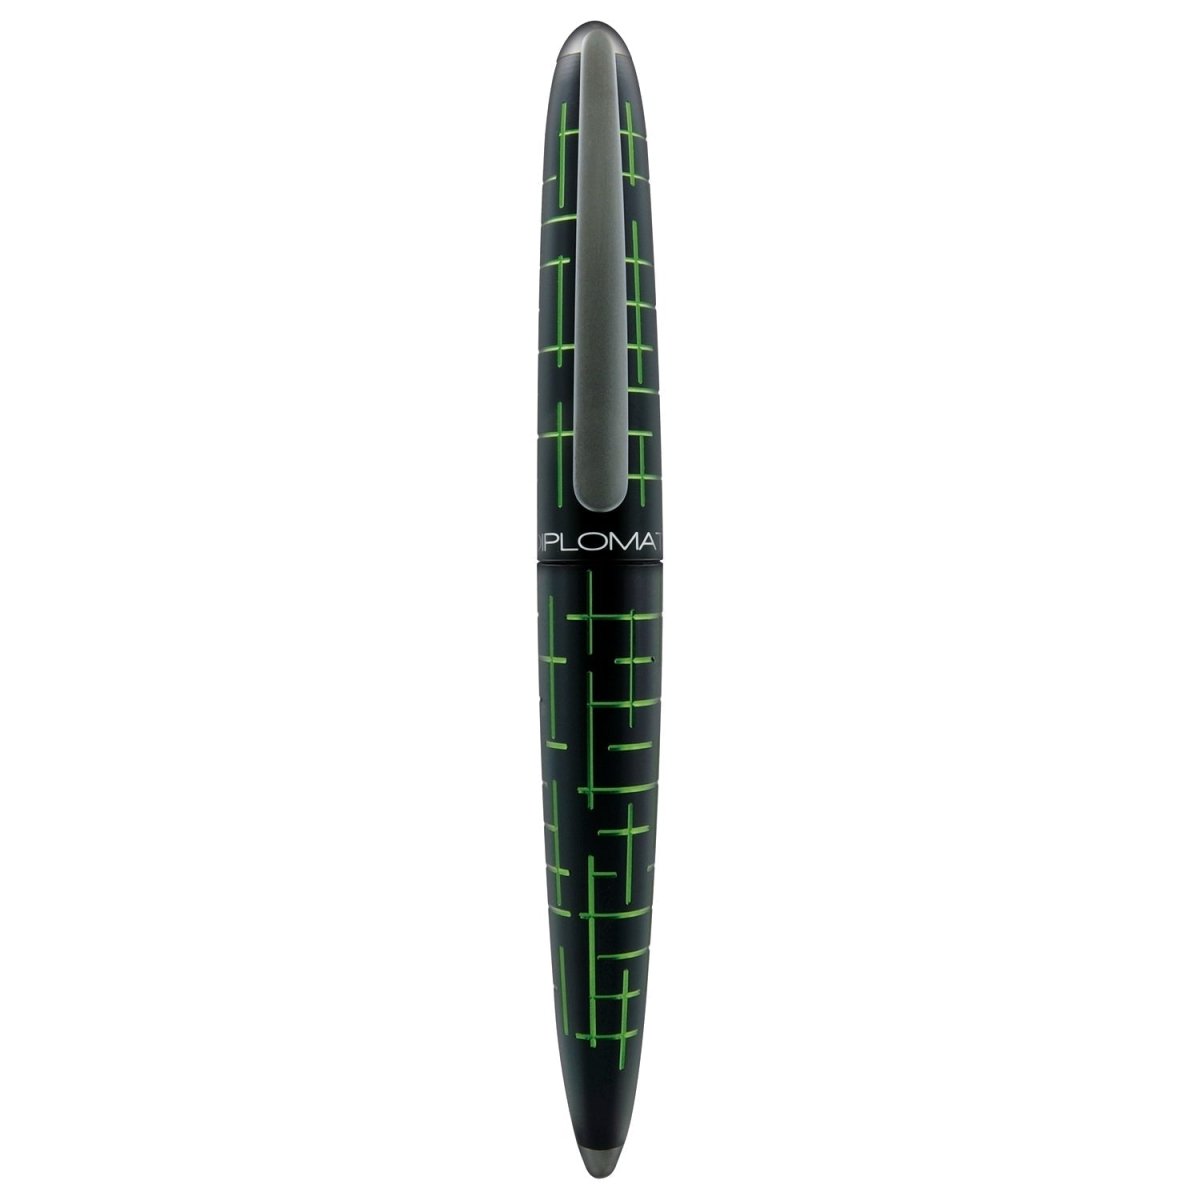 Diplomat Elox Matrix Black/Green Roller Ball Pen D40363030 - SCOOBOO - DP_ELX_MTRX_BLKGRN_RB_D40363030 - Roller Ball Pen